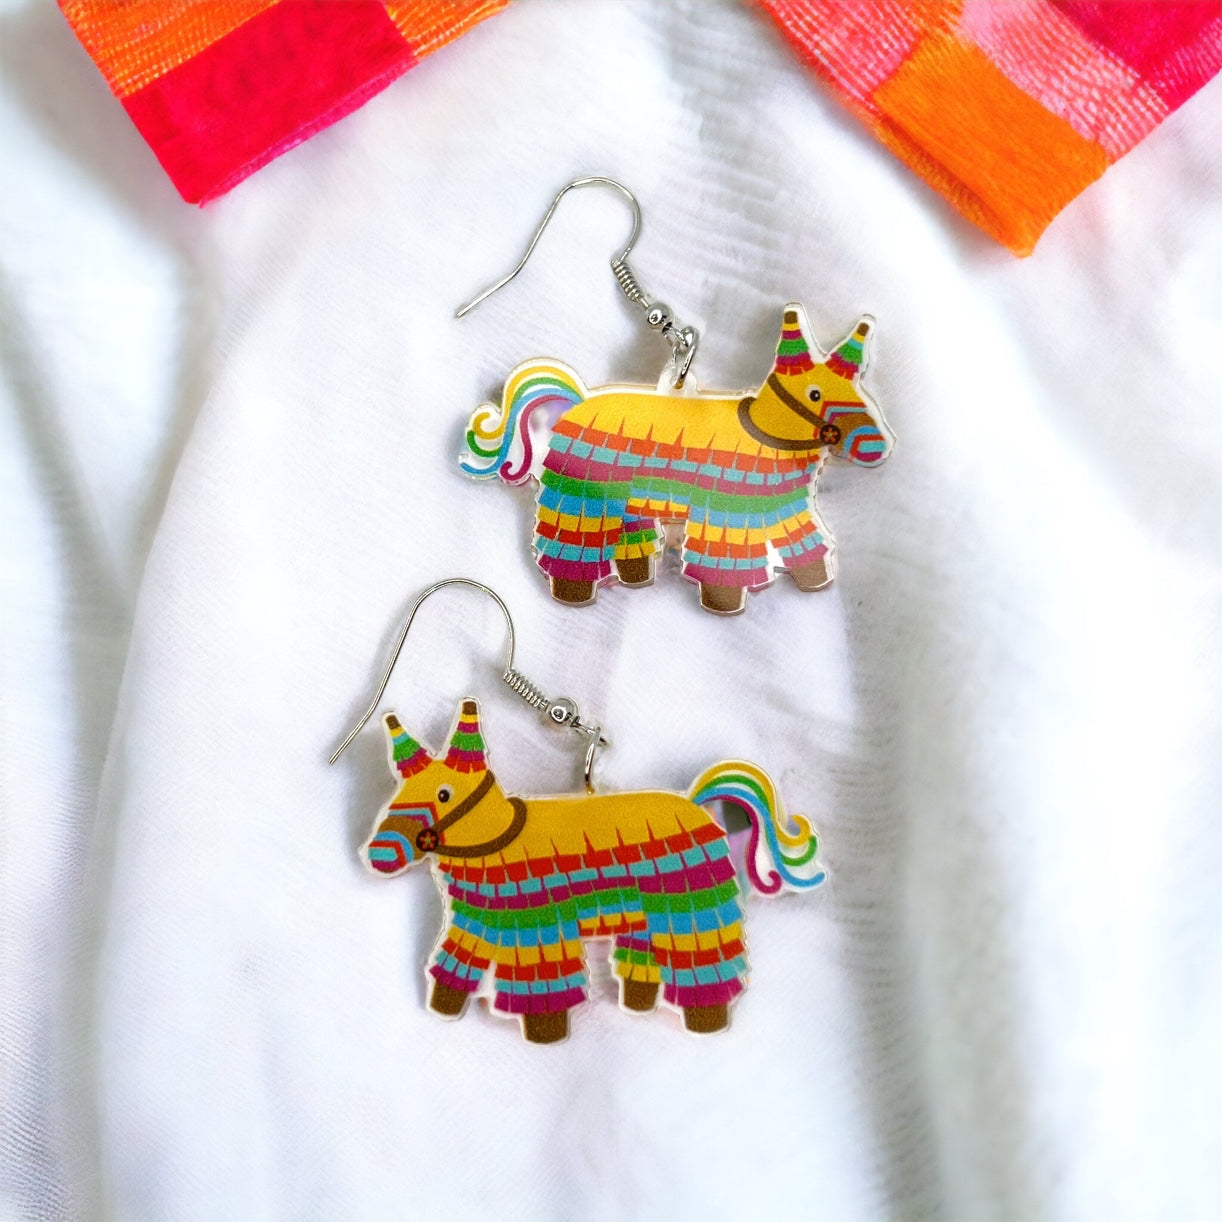 Fiesta Earrings - Dia de los Muertos, Halloween Earrings, Taco Tuesday, Tequila Earrings, Halloween Earrings, Piñata Earrings, Day of the Dead, Avocado Earrings, Cinco de Mayo